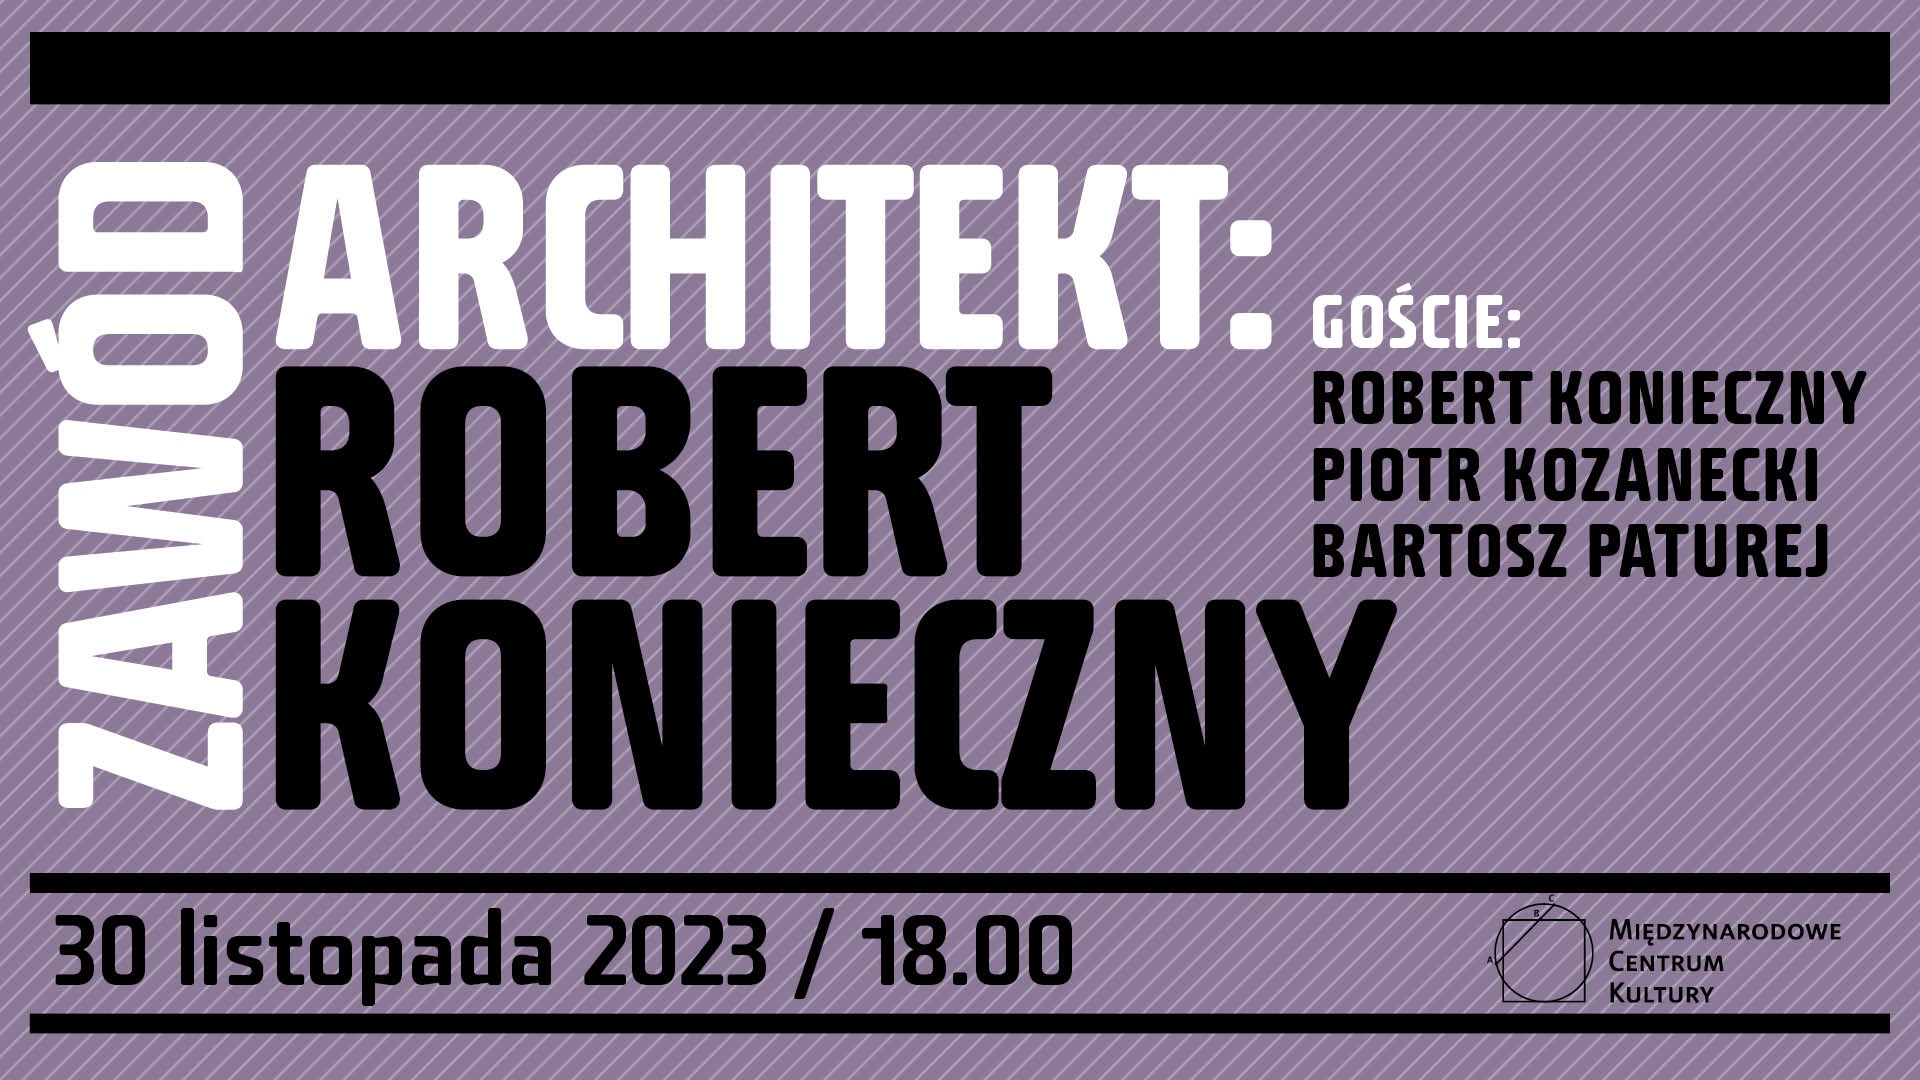 Robert Konieczny w Krakowie! Spotkanie z najbardziej rozpoznawalnym polskim architektem na świecie